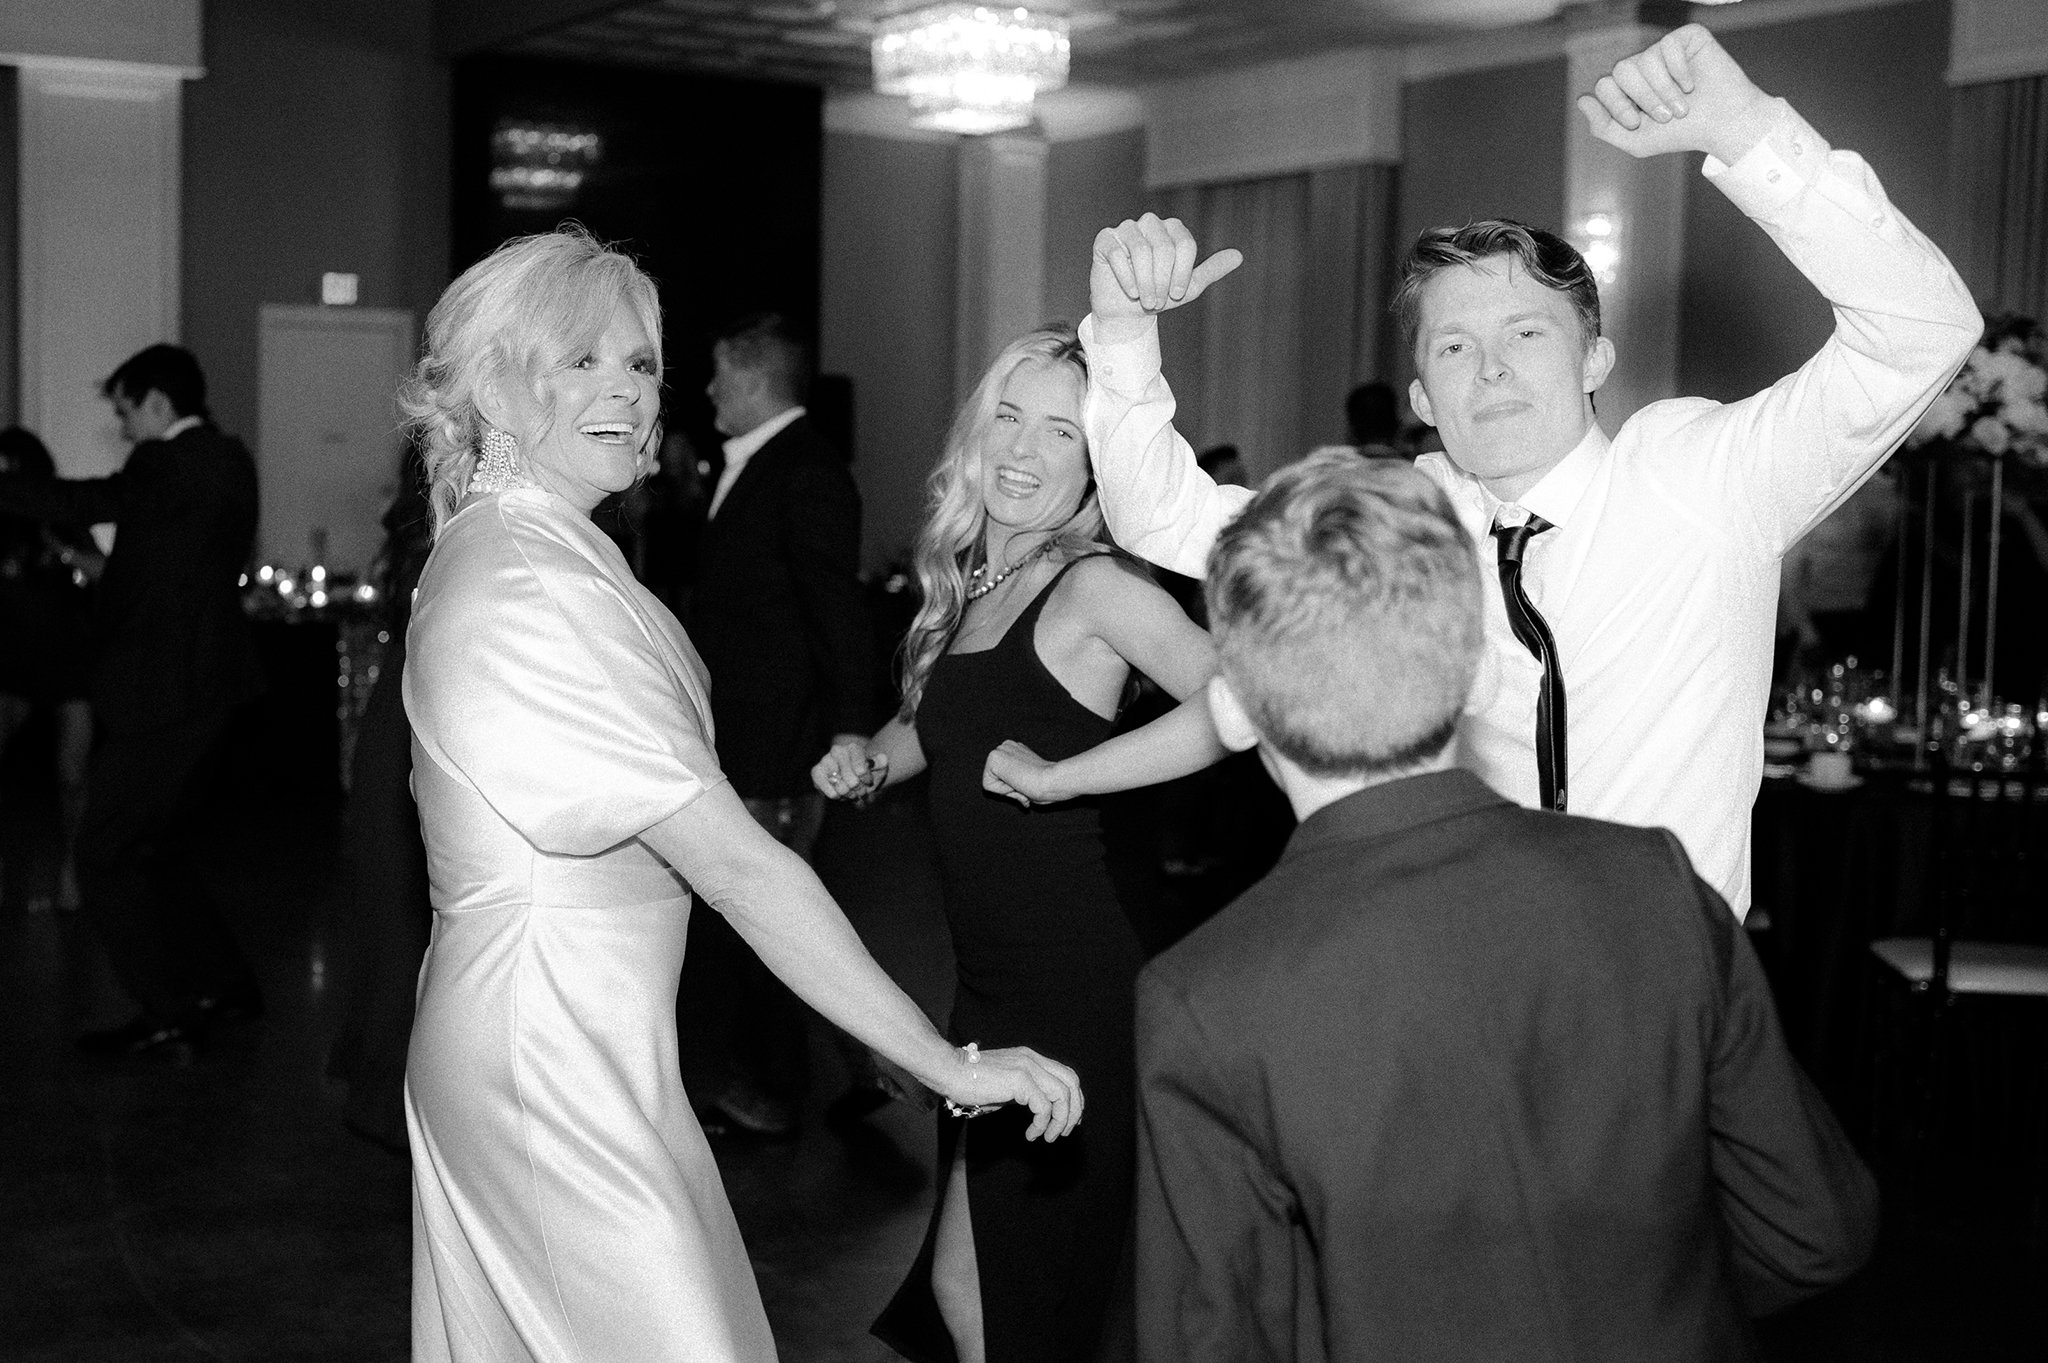 ashley gillen photography _ houston wedding photographer _ sandlewood manor tomball tx _ tomball tx weddings _ houston weddings _ brides of houston _ ktmrsh146.jpg